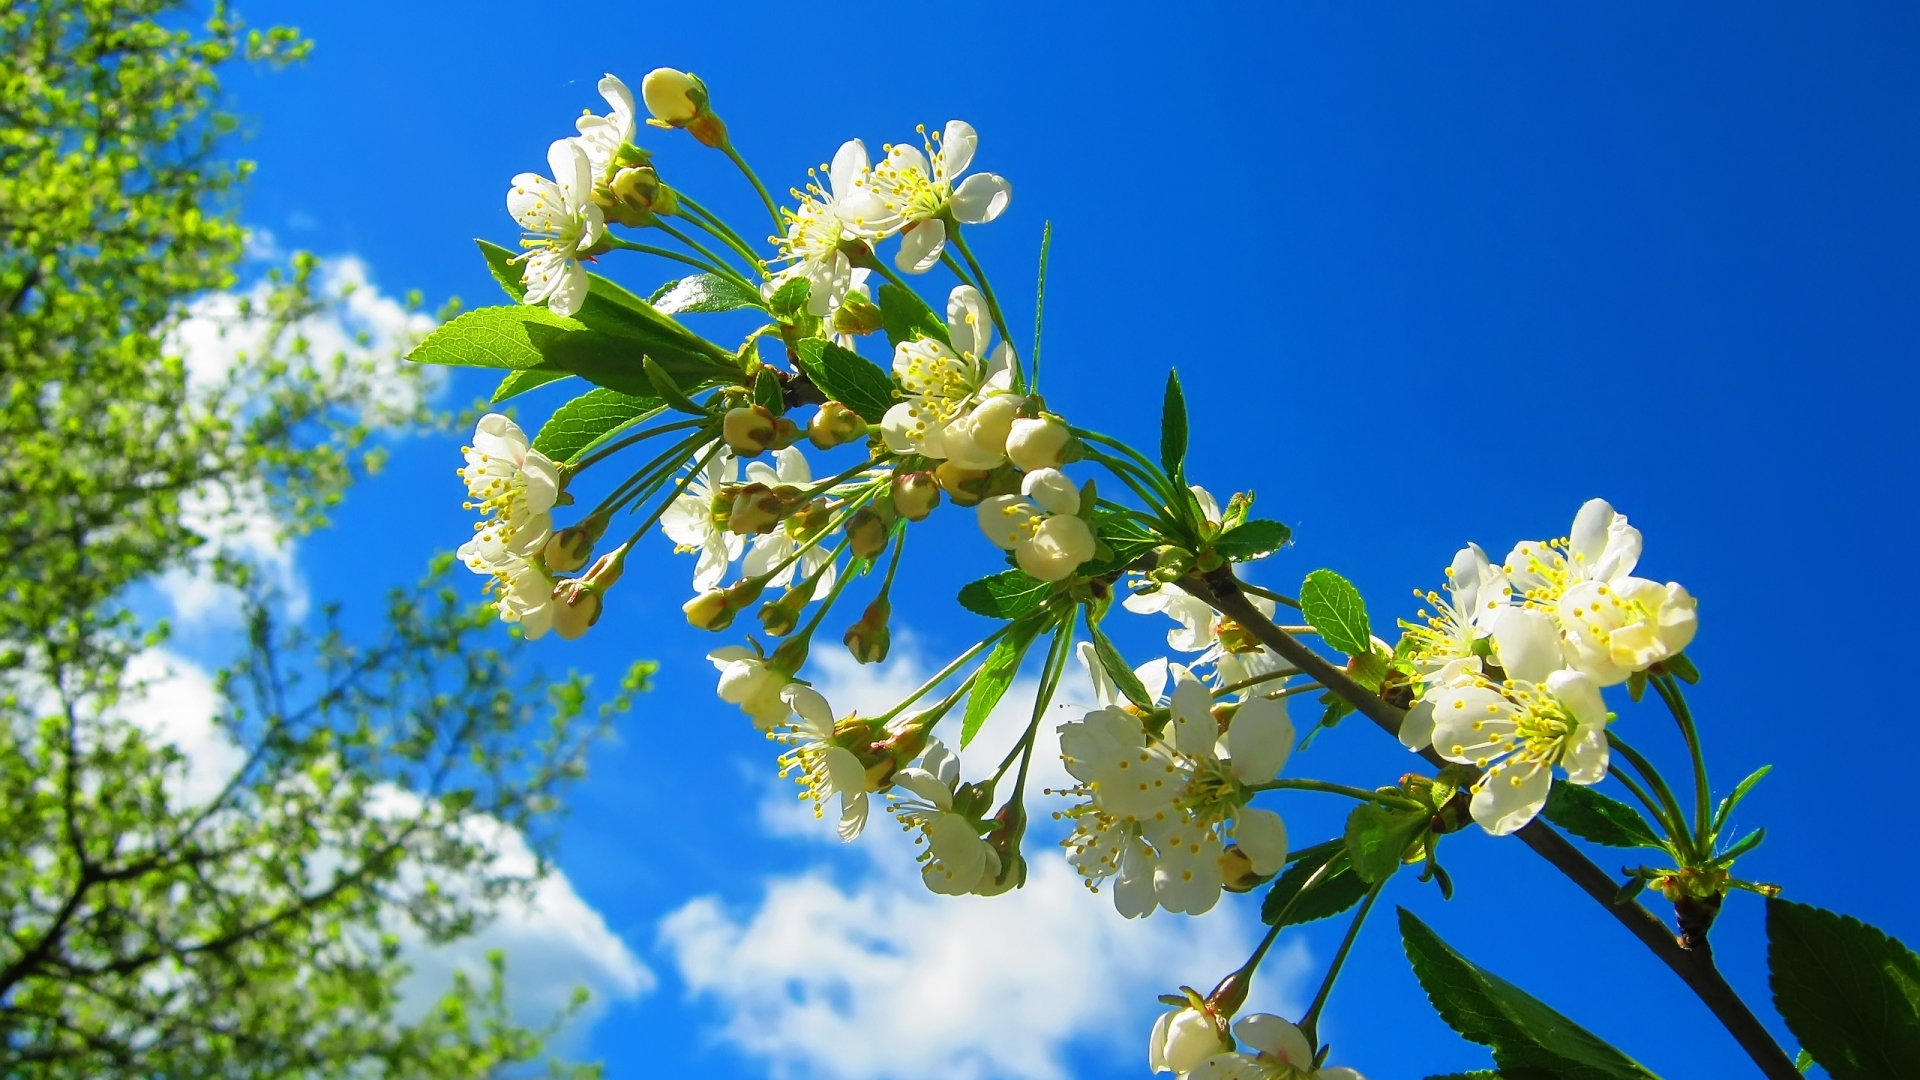 Spring Flower Tree for 1920 x 1080 HDTV 1080p resolution